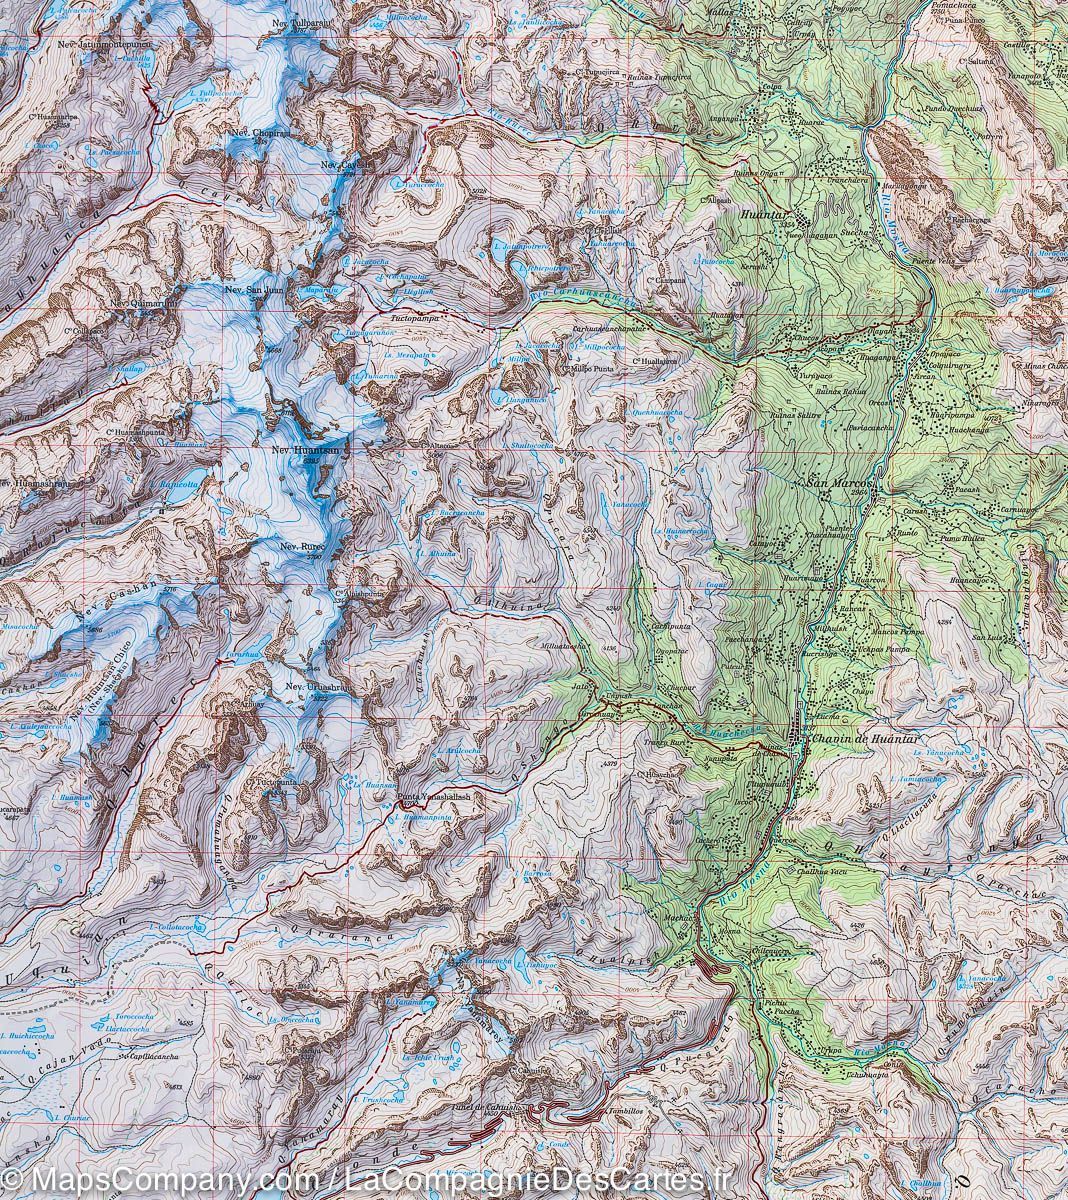 Carte de randonnée -  Cordillère Blanche Sud 03b (Pérou) | Alpenverein - La Compagnie des Cartes